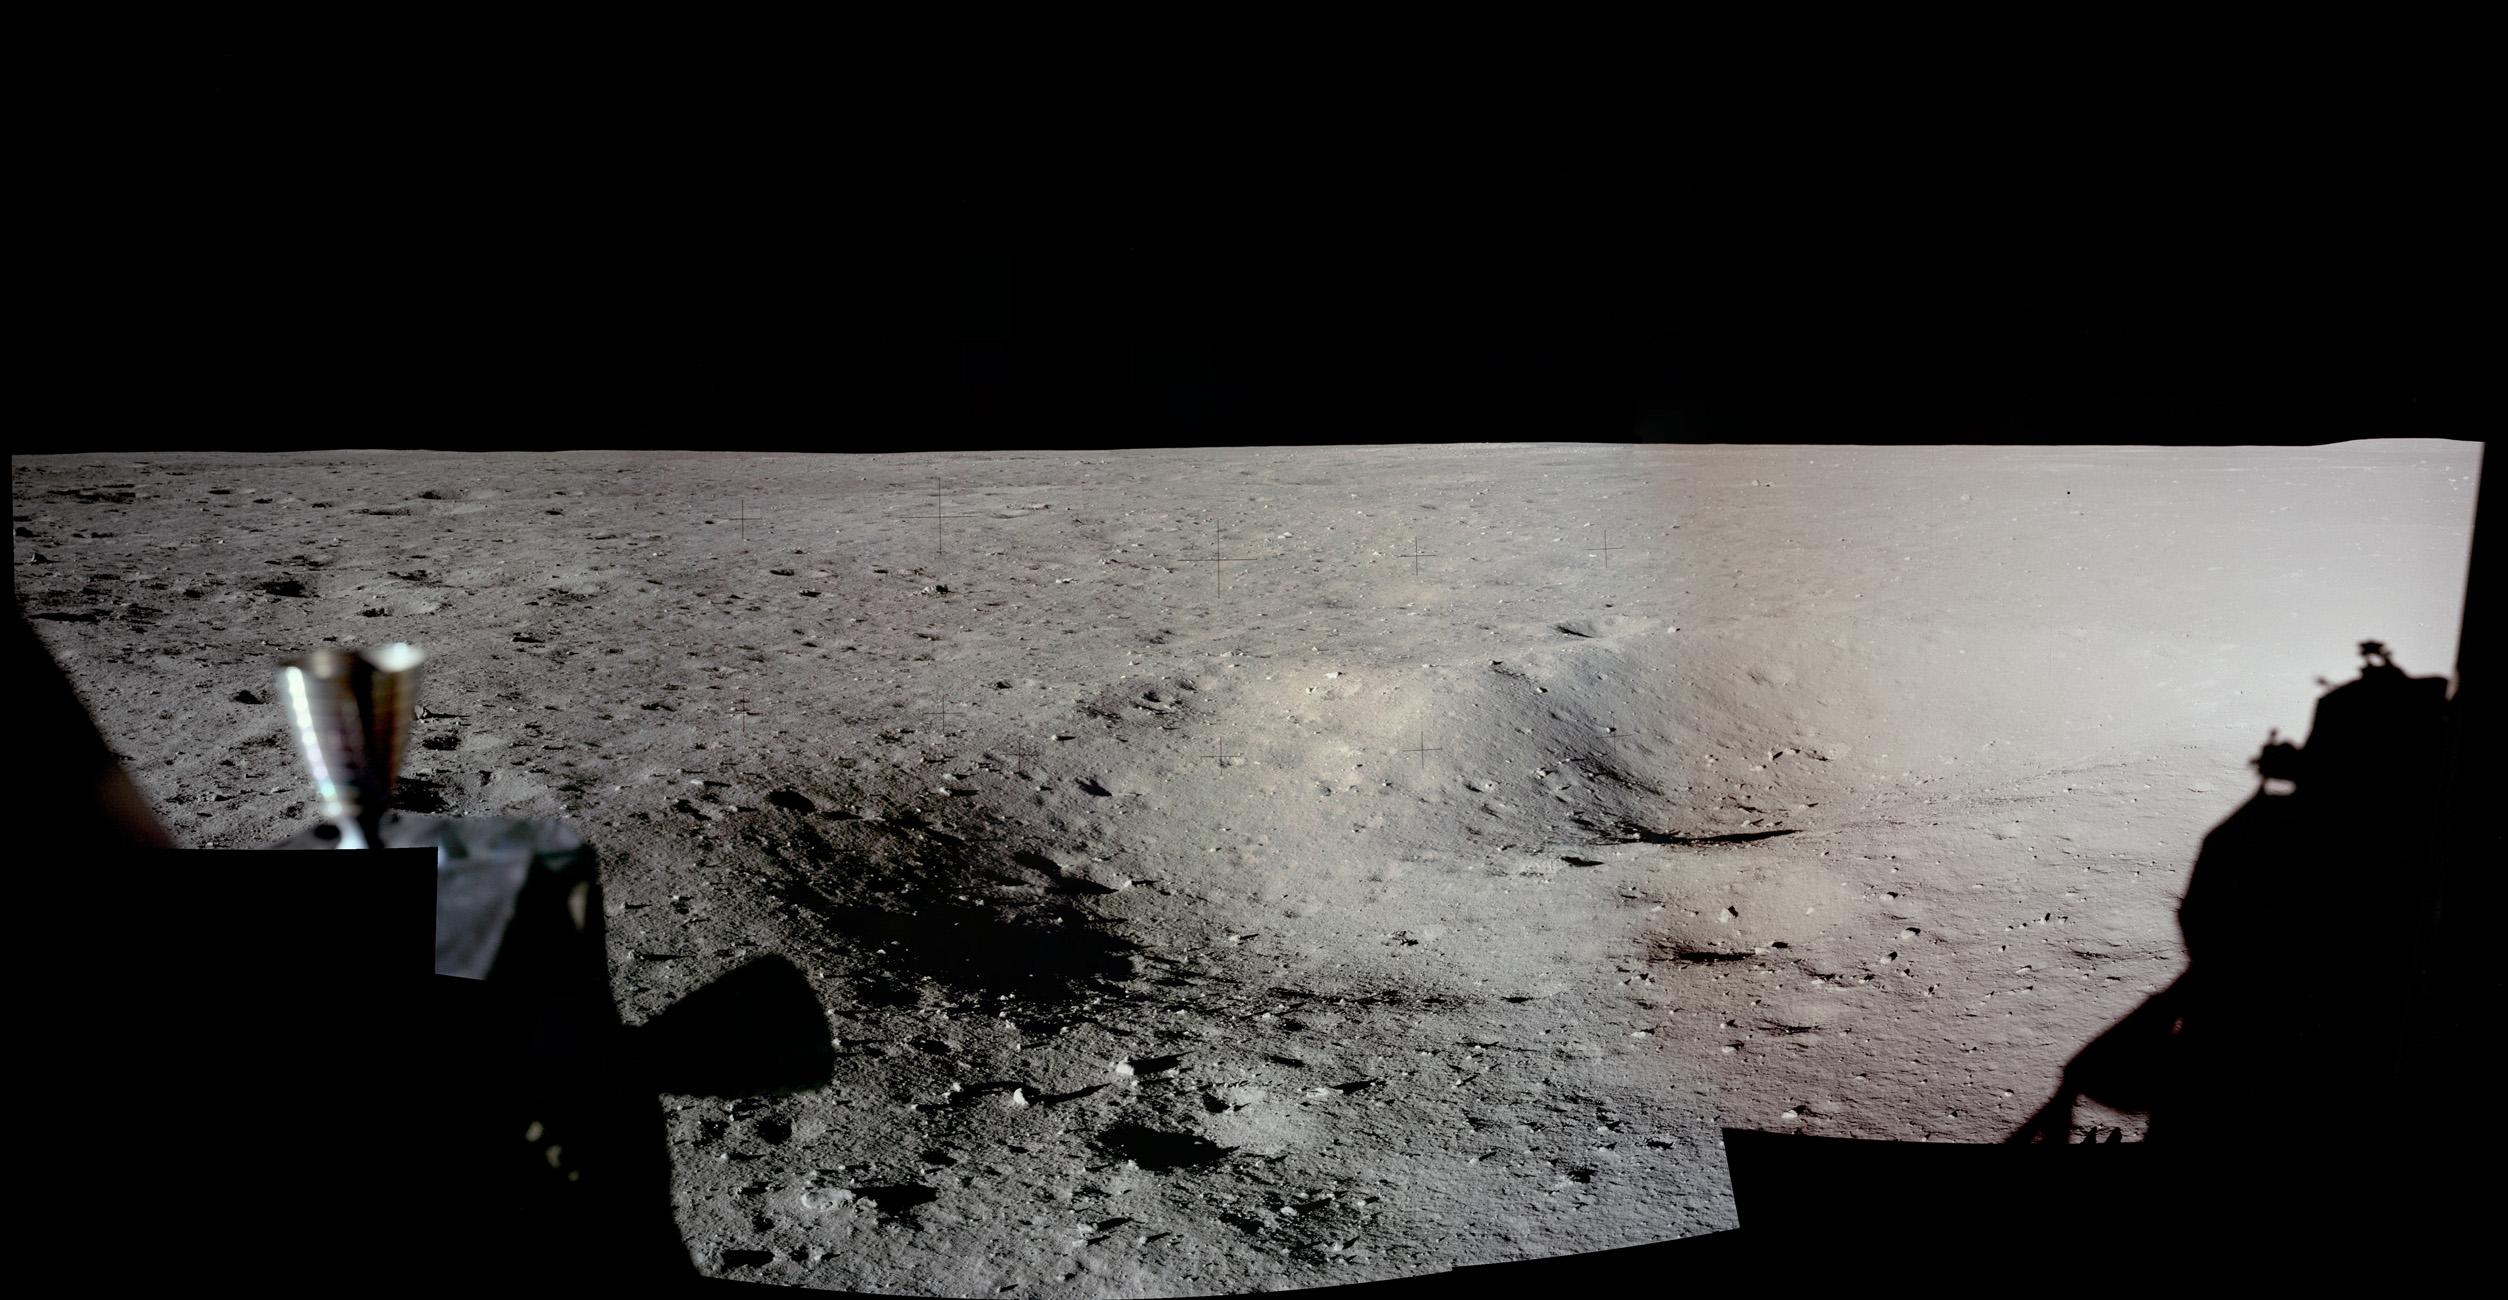 صورة پانوراميّة لسطح القمر يظهر في يمينها ظلّ مركبة وعلى اليسار فوّهات دفع وبعض التضاريس الطفيفة على السطح